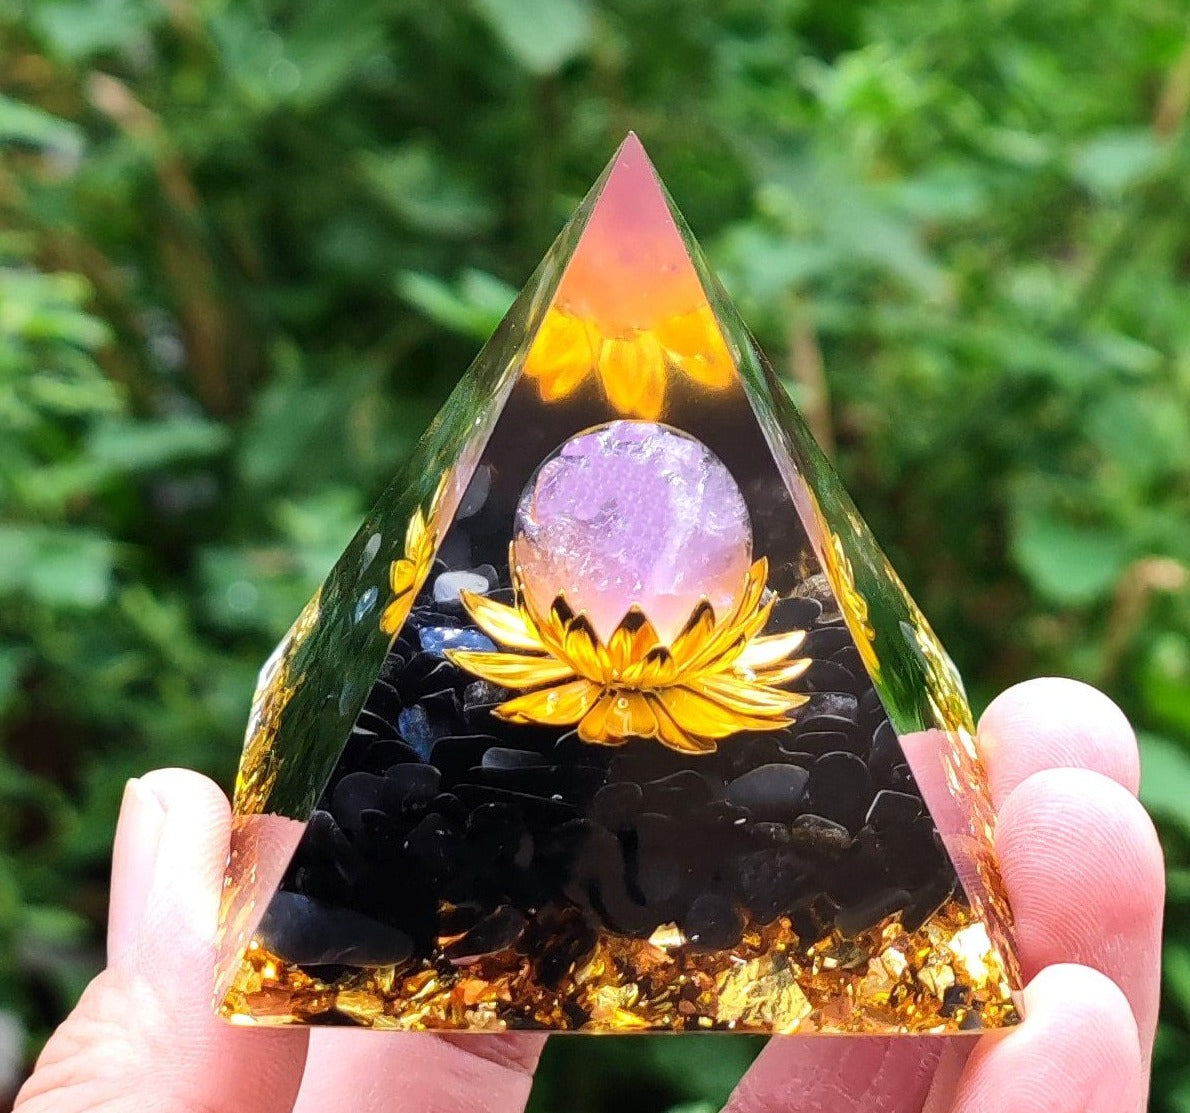 Lotus Crystal Ball Energy Pyramid